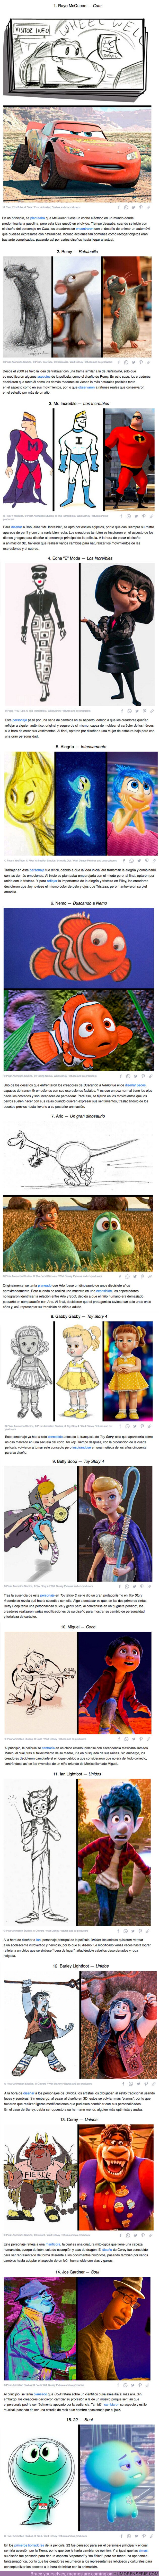 65933 - GALERÍA: Así lucían estos 15 personajes de películas de Pixar en sus bocetos originales